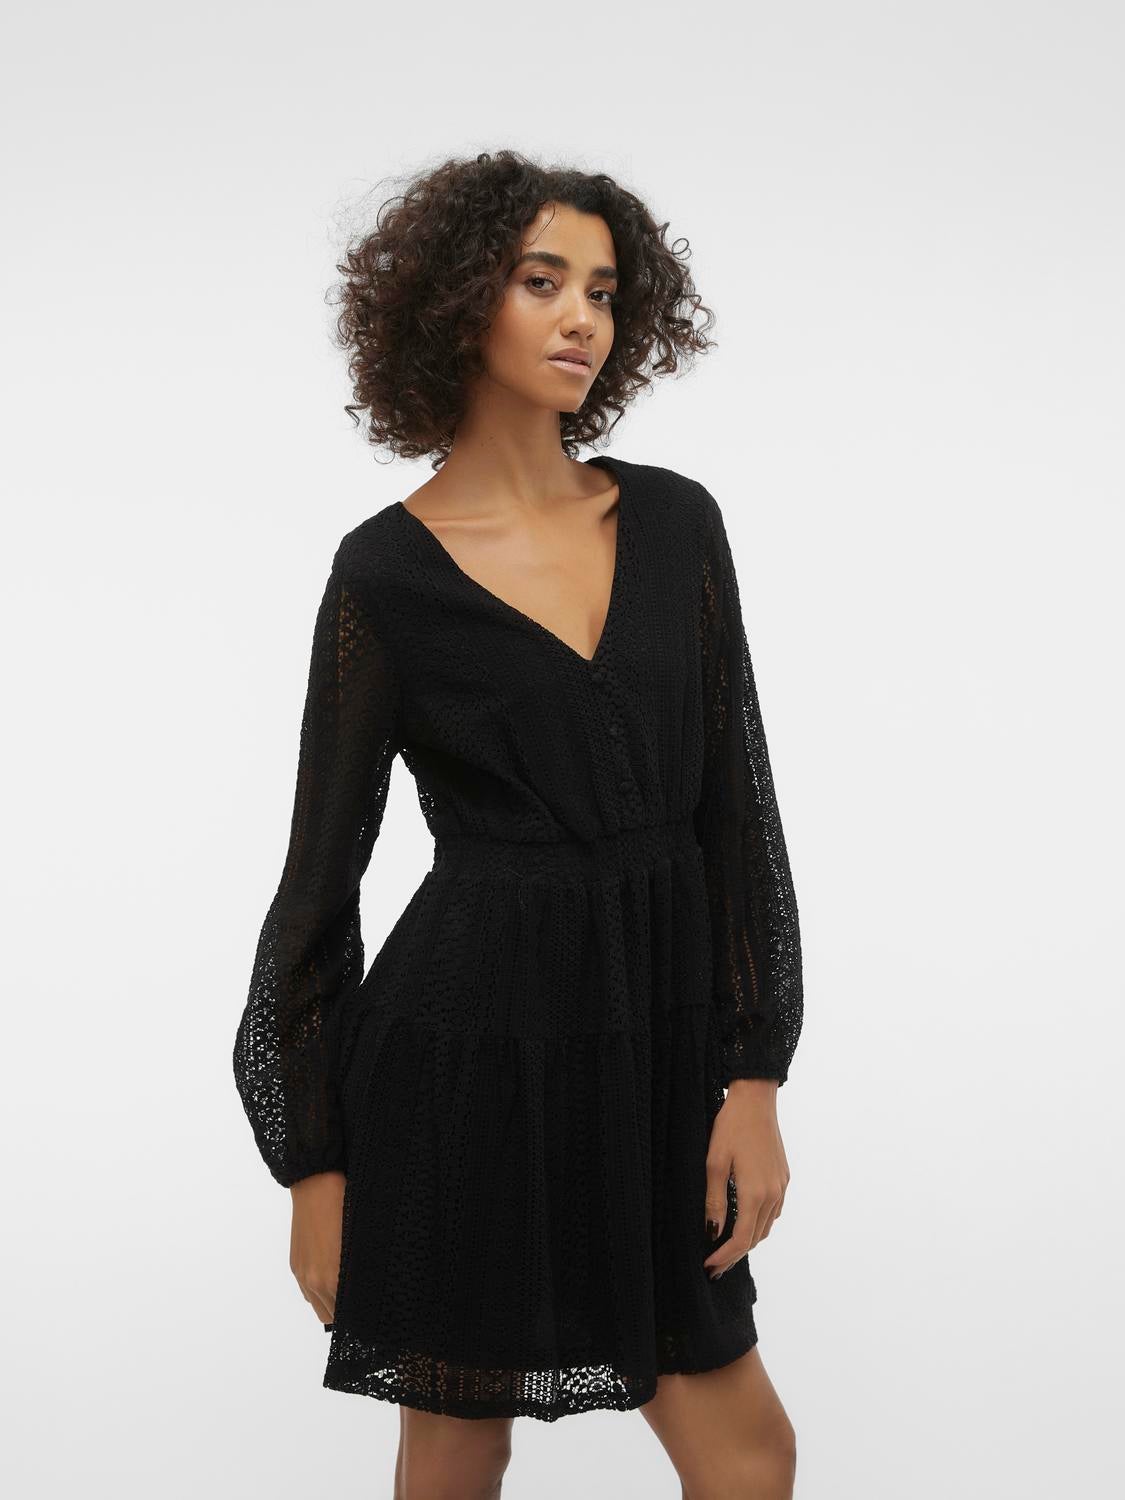 Buy Vero Moda Black & Beige Lace Sheath Dress - Dresses for Women 829066 |  Myntra